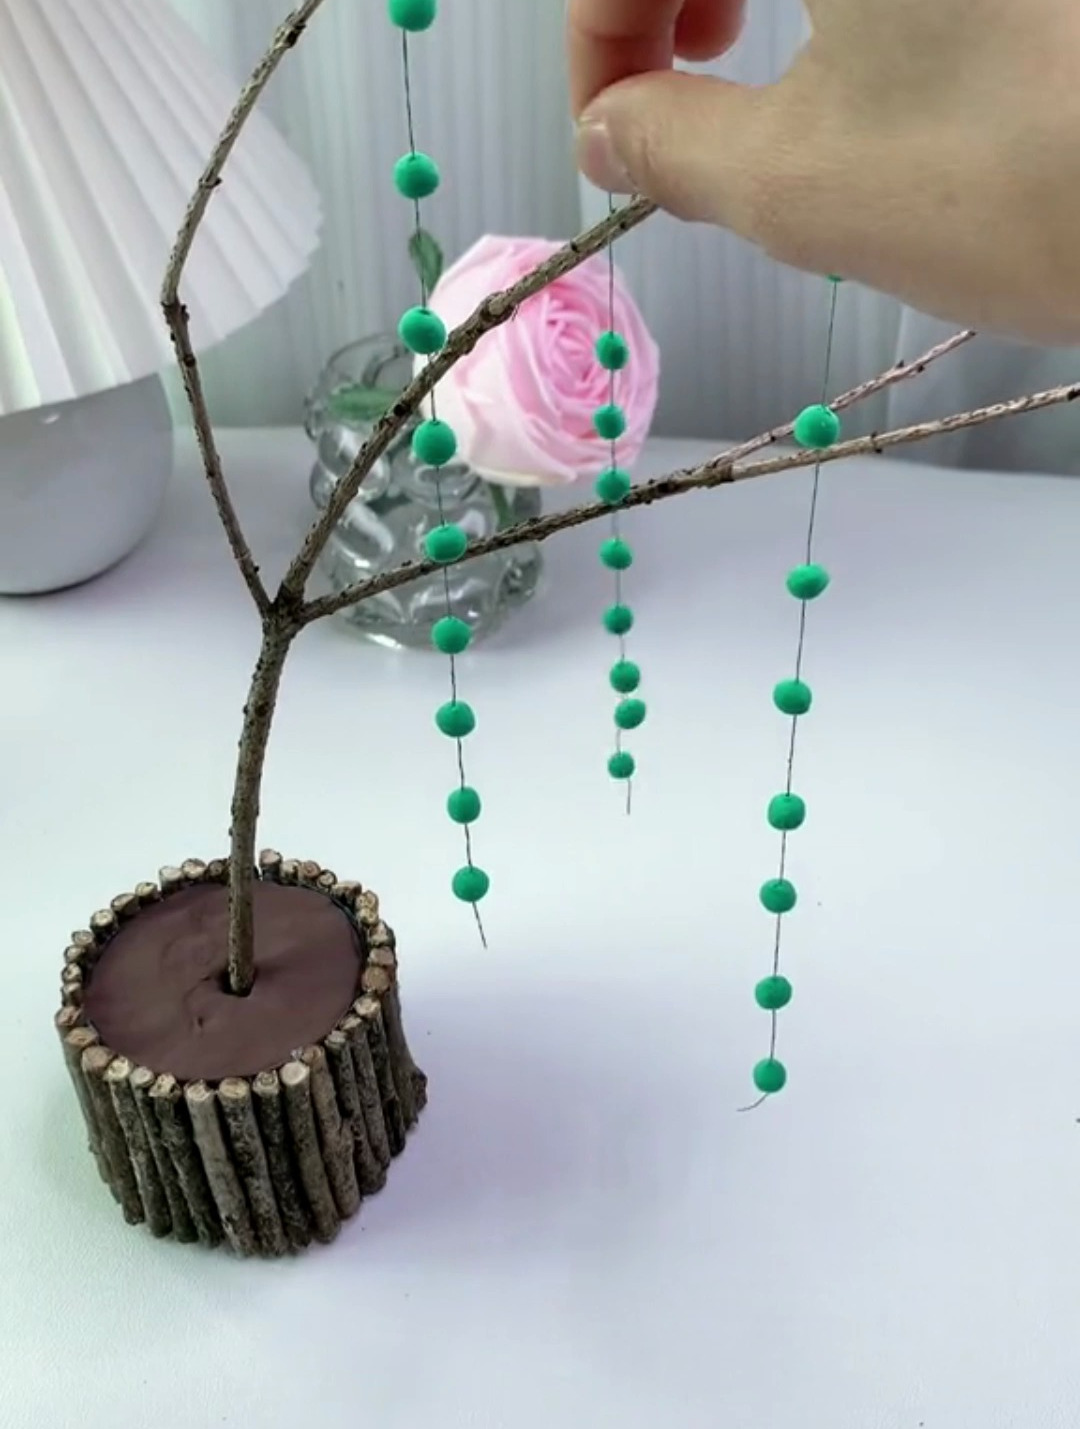 植树节,跟孩子一起用粘土制作一棵柳树吧,简单好玩